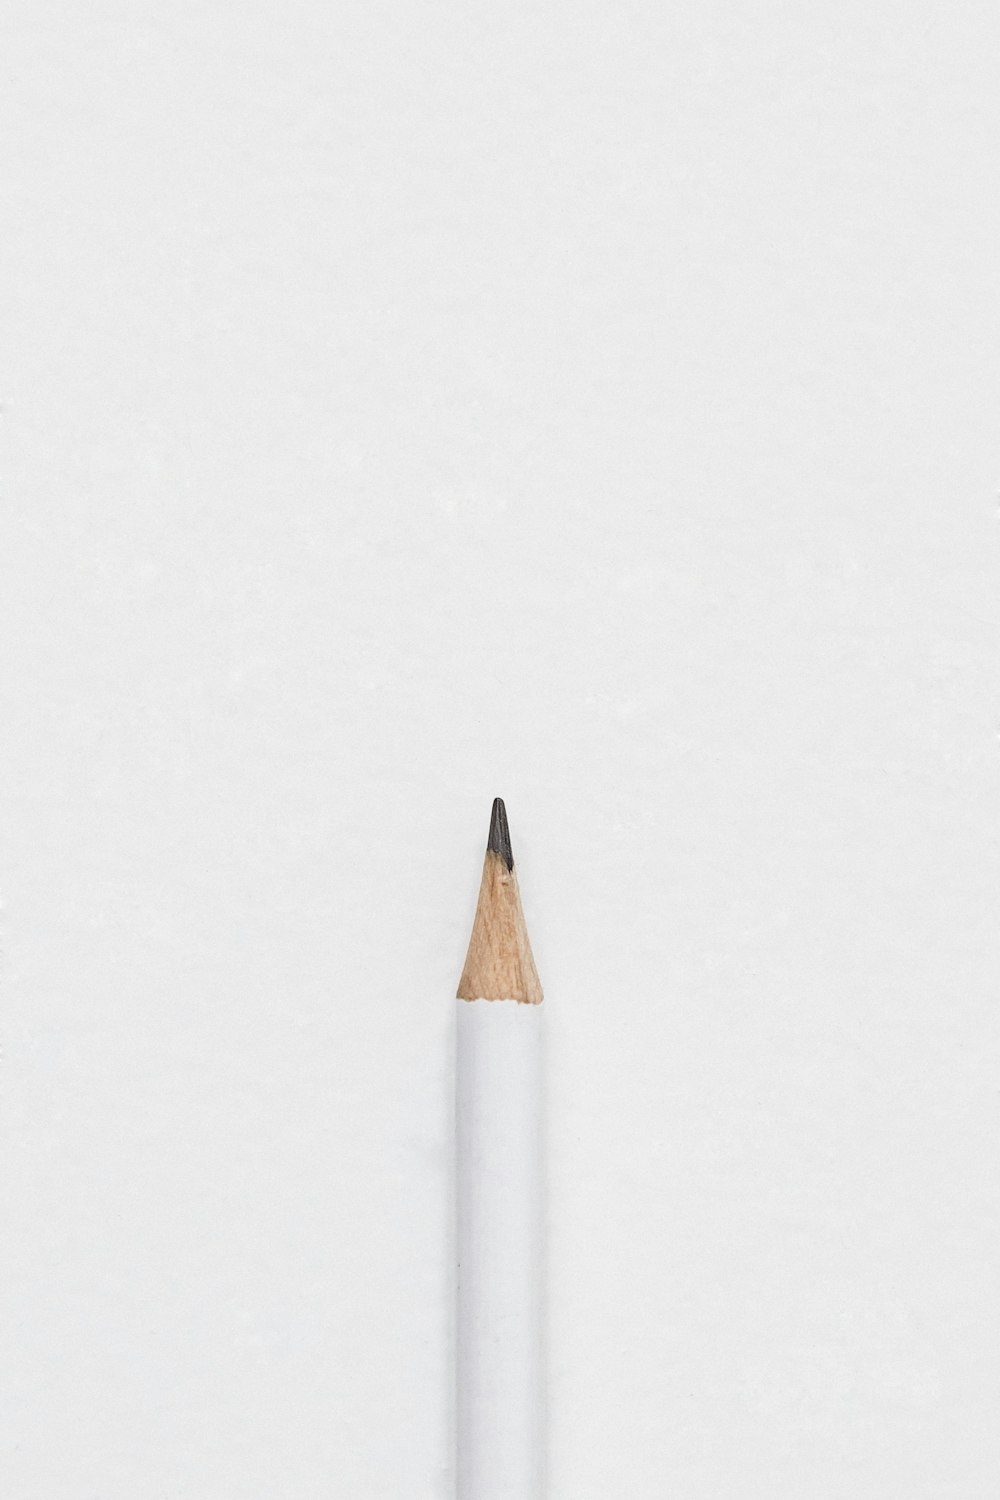 crayon à mine blanche sur la surface